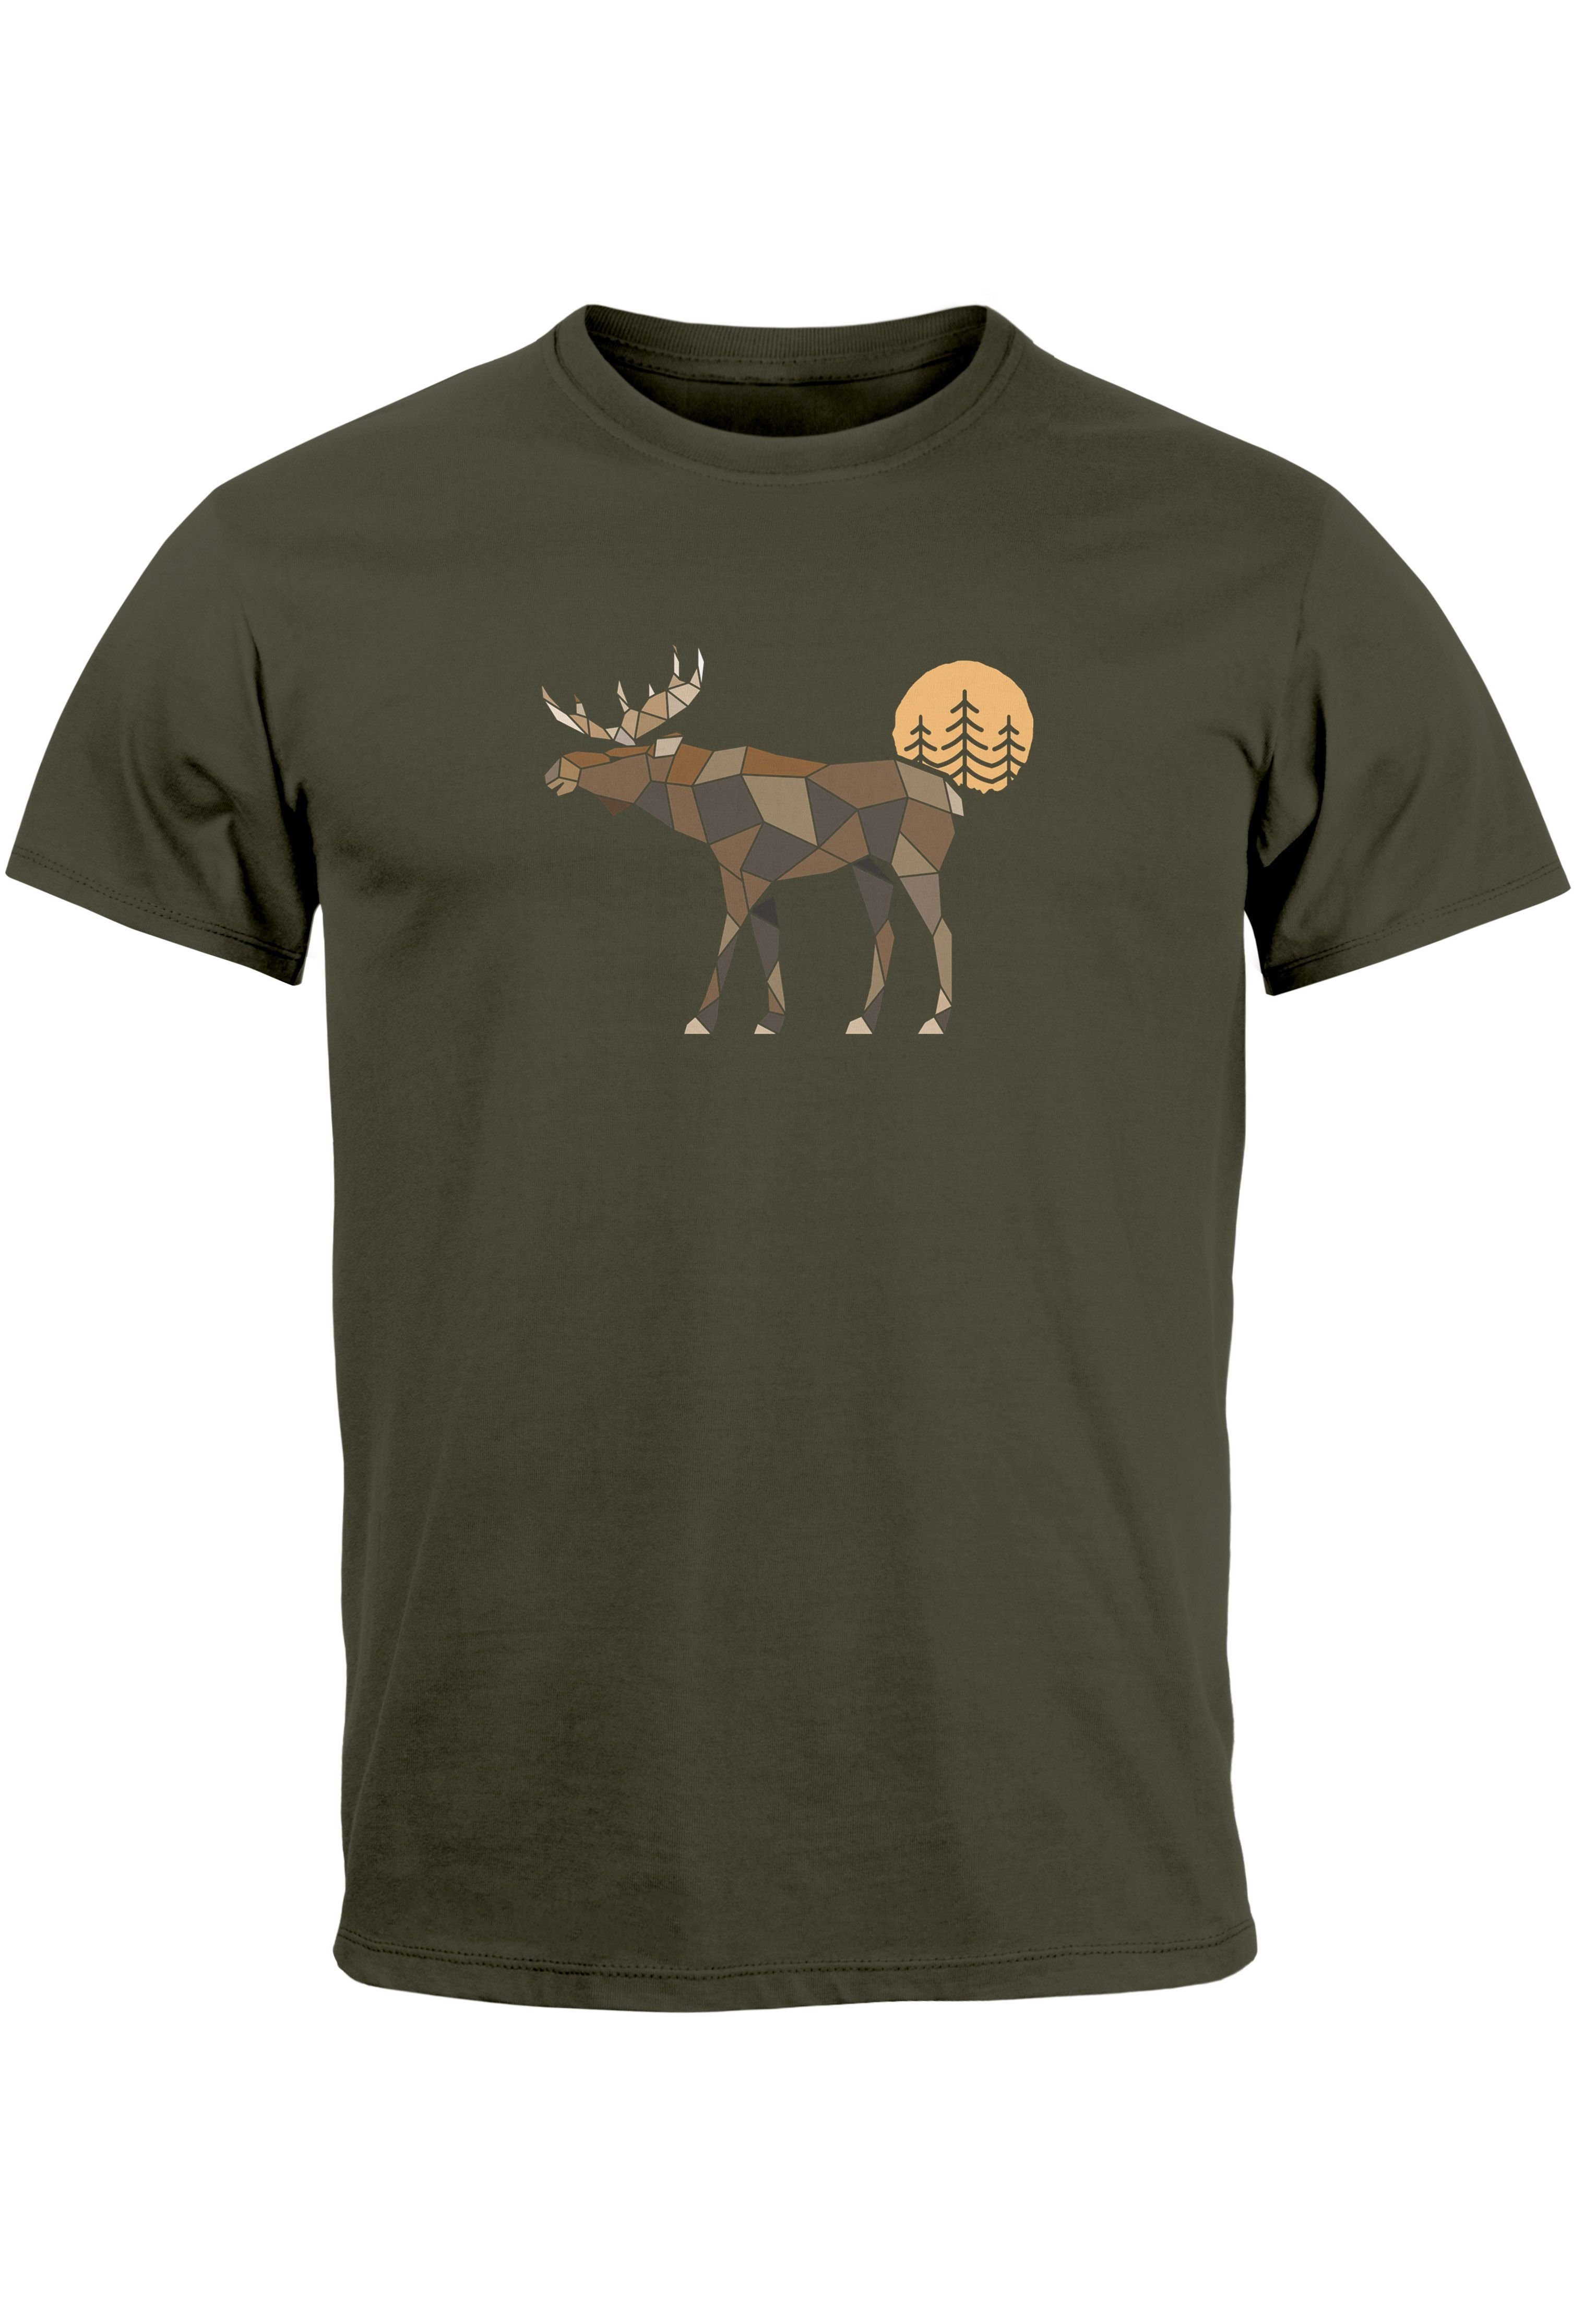 Neverless Print-Shirt Herren T-Shirt Shirt Printshirt mit Aufdruck Polygon Elch Outdoor Moti mit Print army